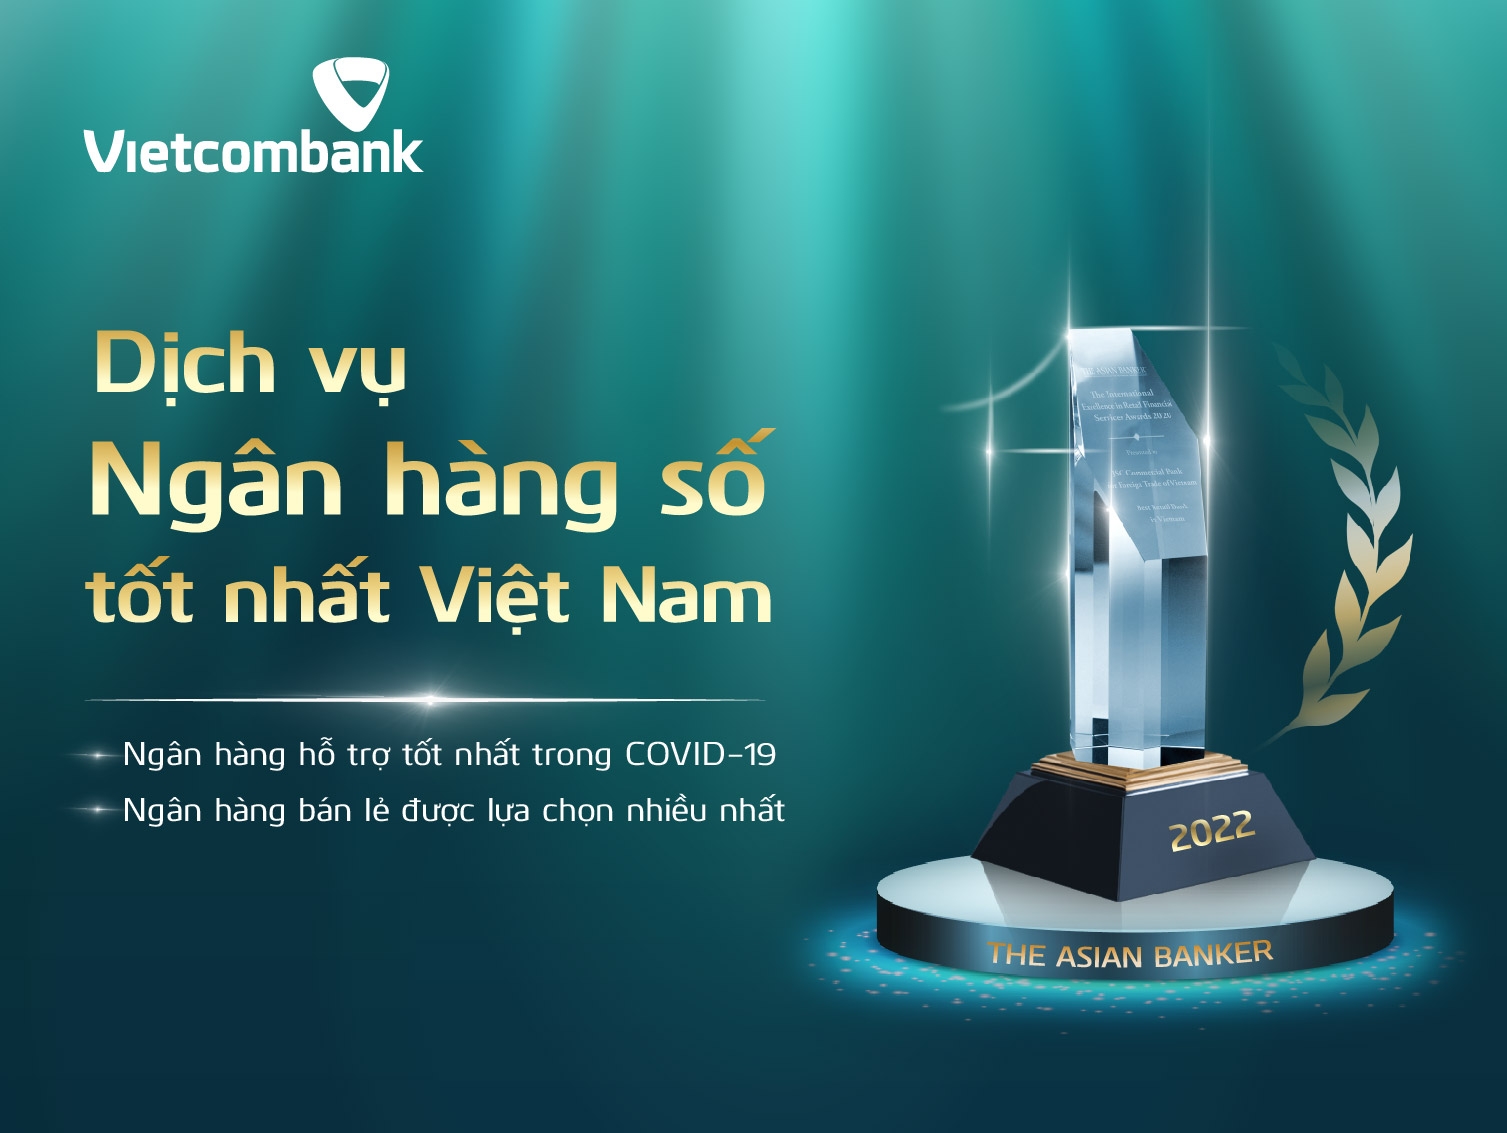 The Asian Banker trao tặng Vietcombank giải thưởng Dịch vụ Ngân hàng số tốt nhất Việt Nam.